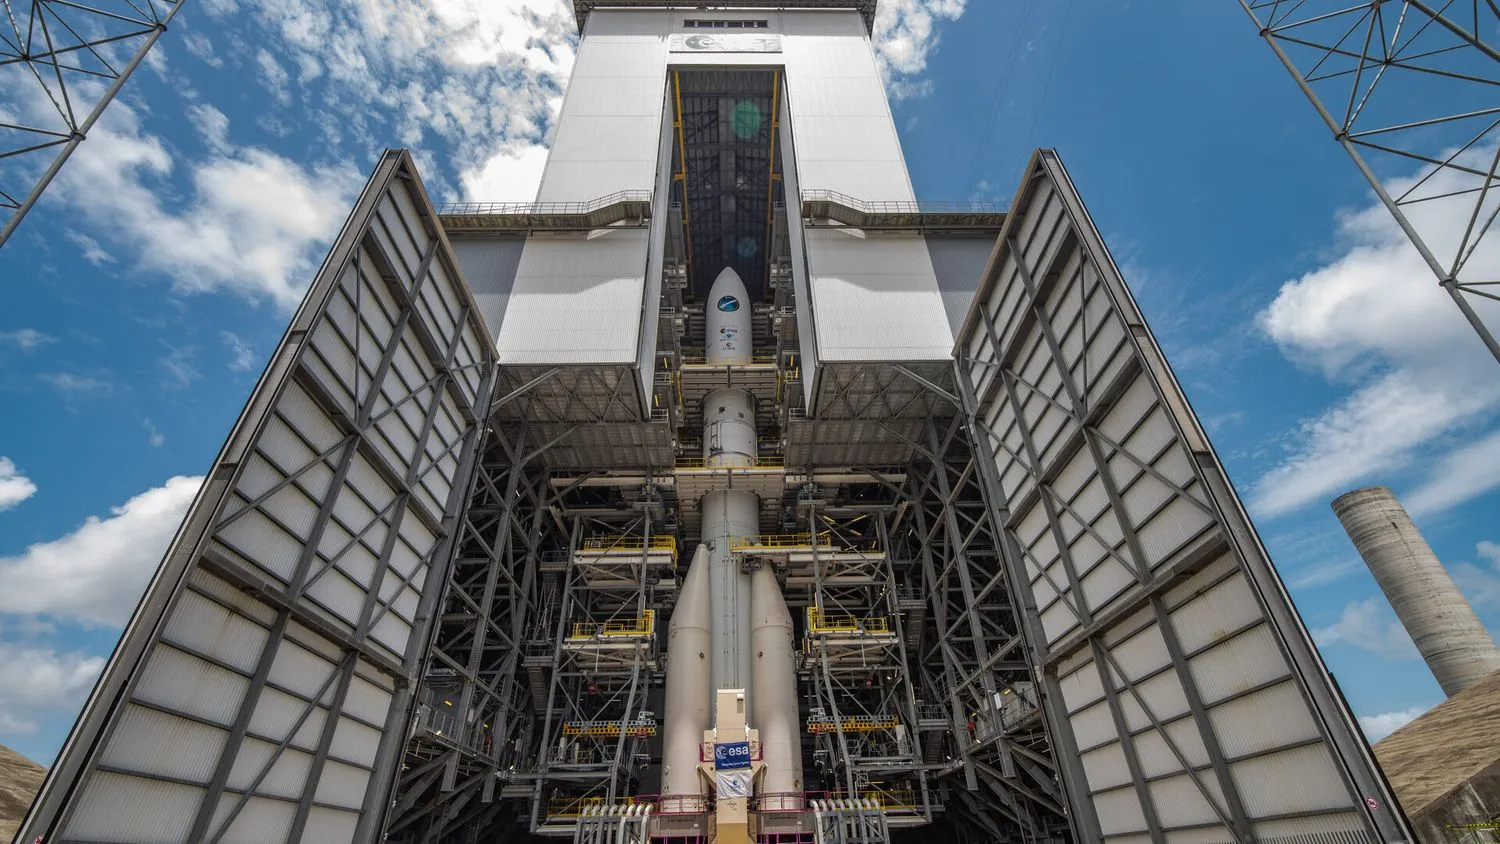 Mehr über den Artikel erfahren Europas neue Ariane-6-Rakete auf dem Weg zum lang erwarteten ersten Start am 9. Juli